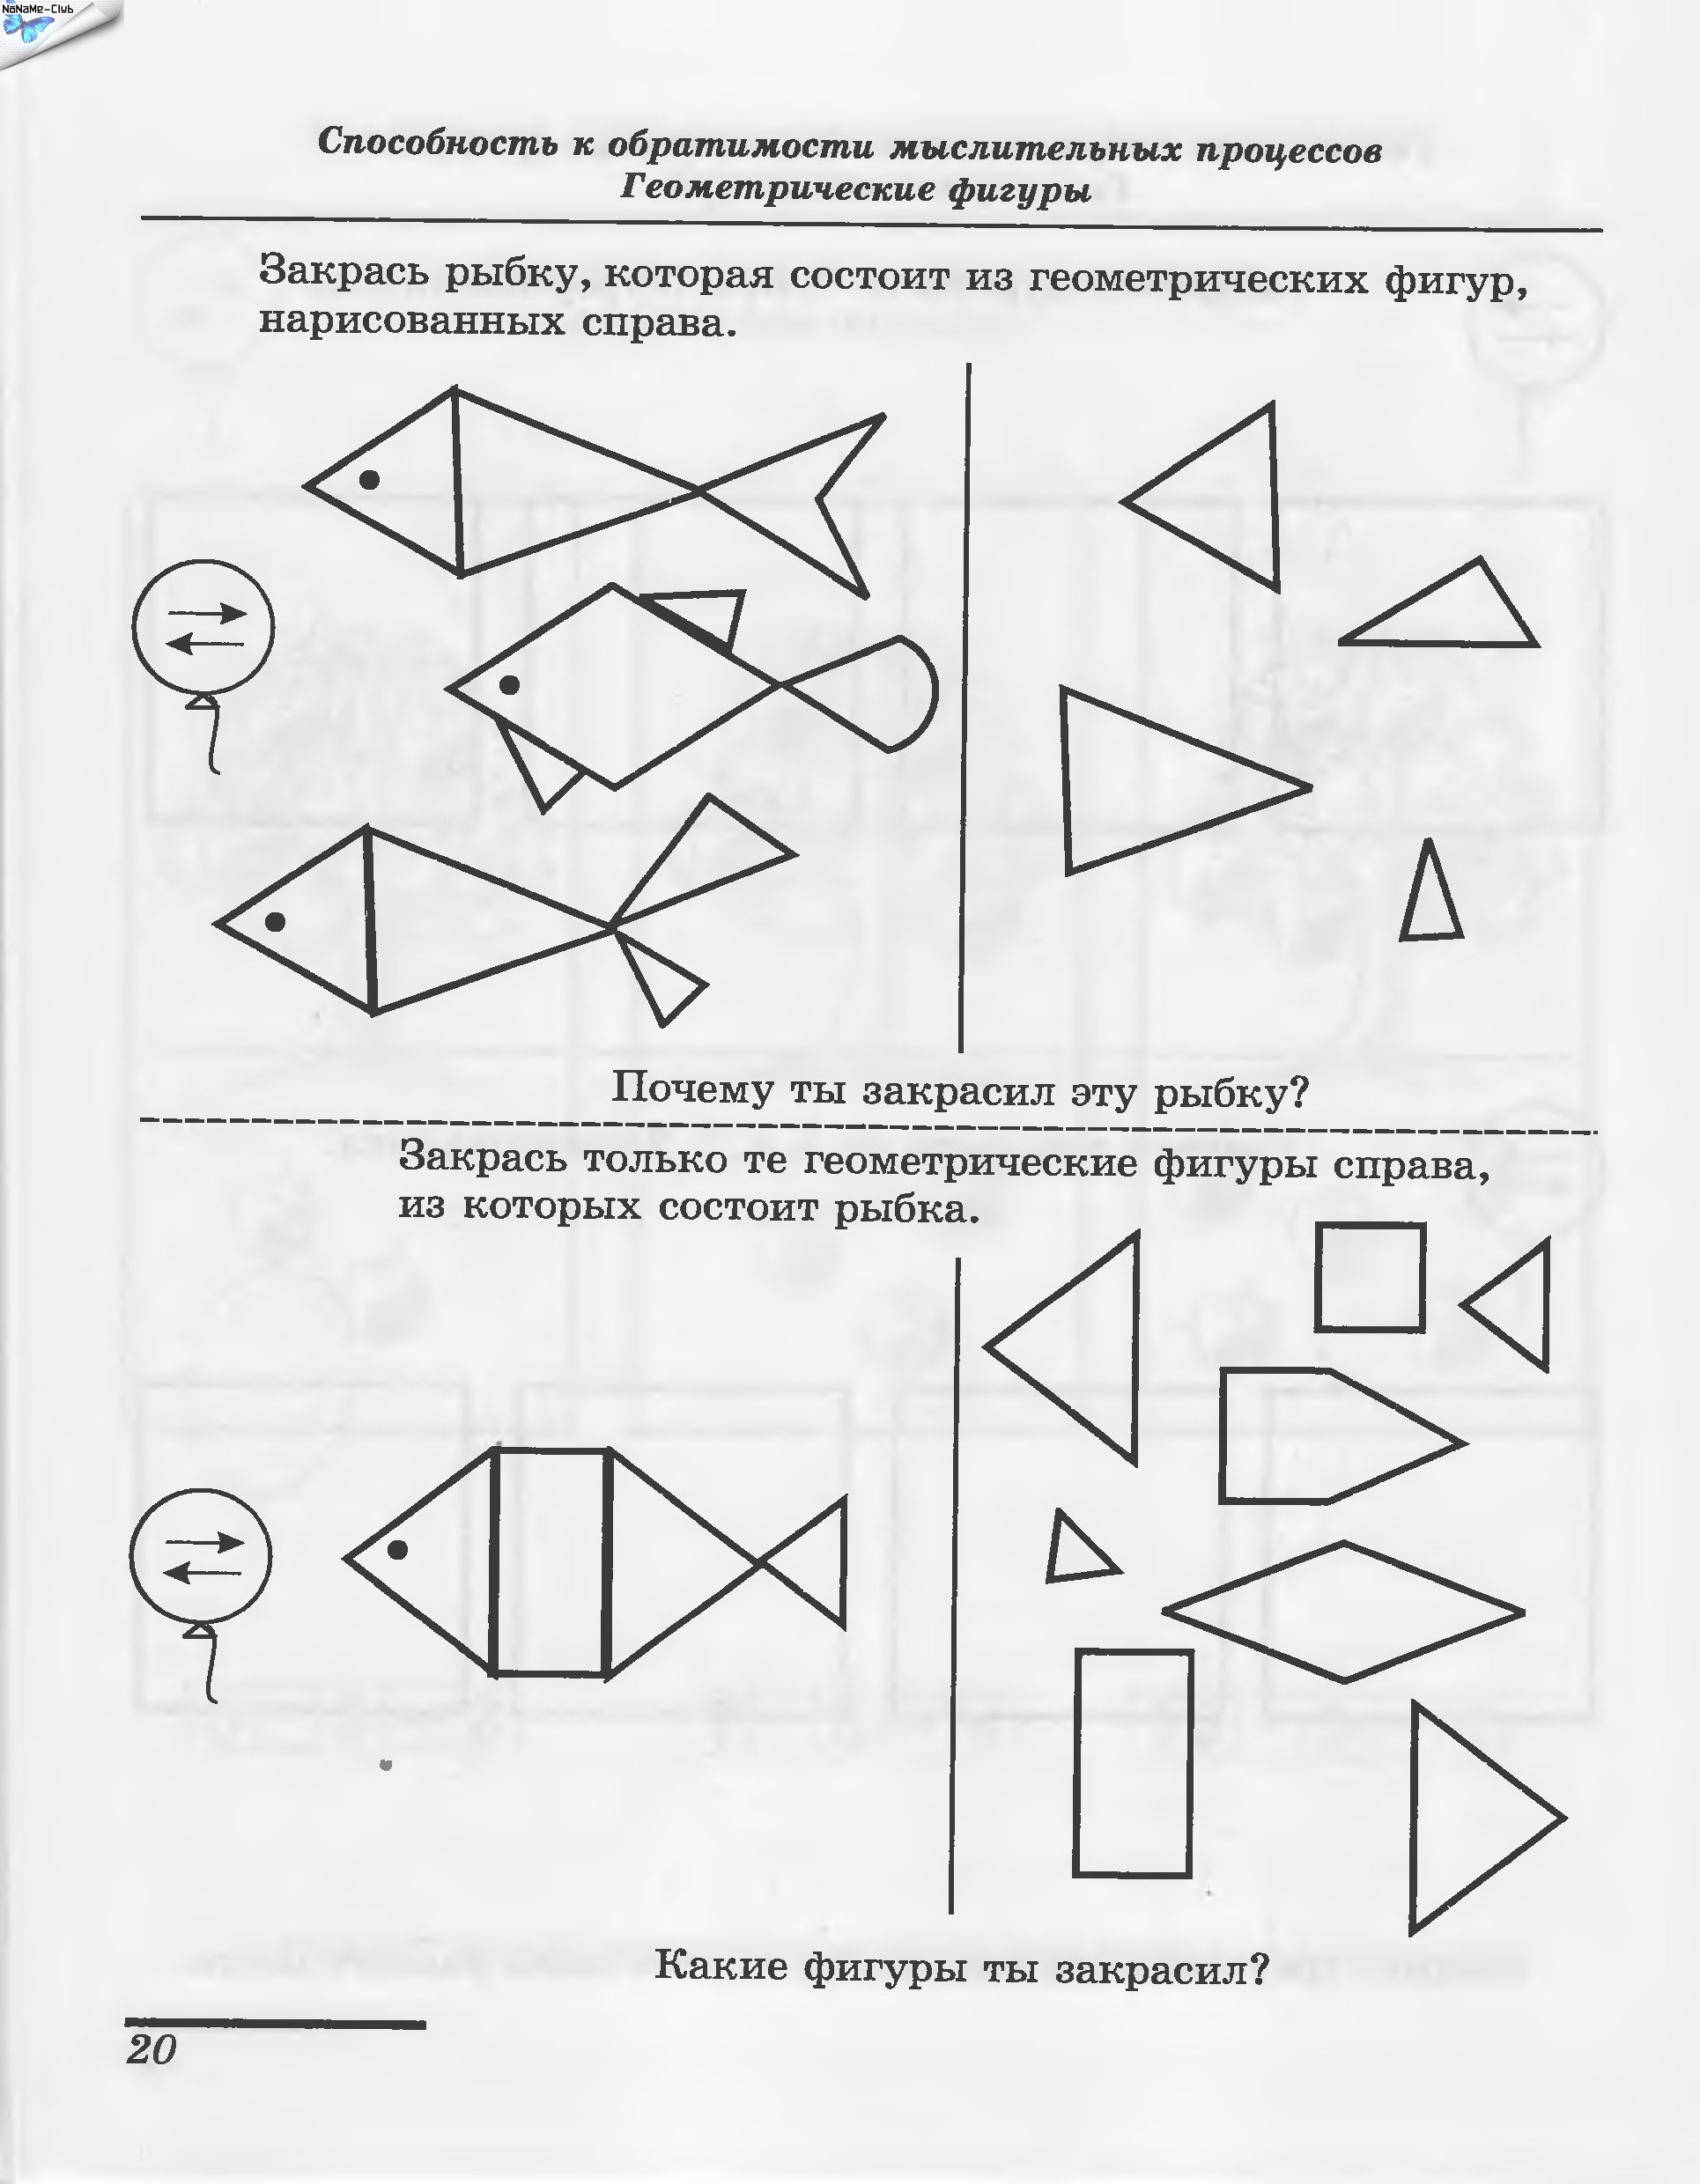 Составление геометрических фигур из частей